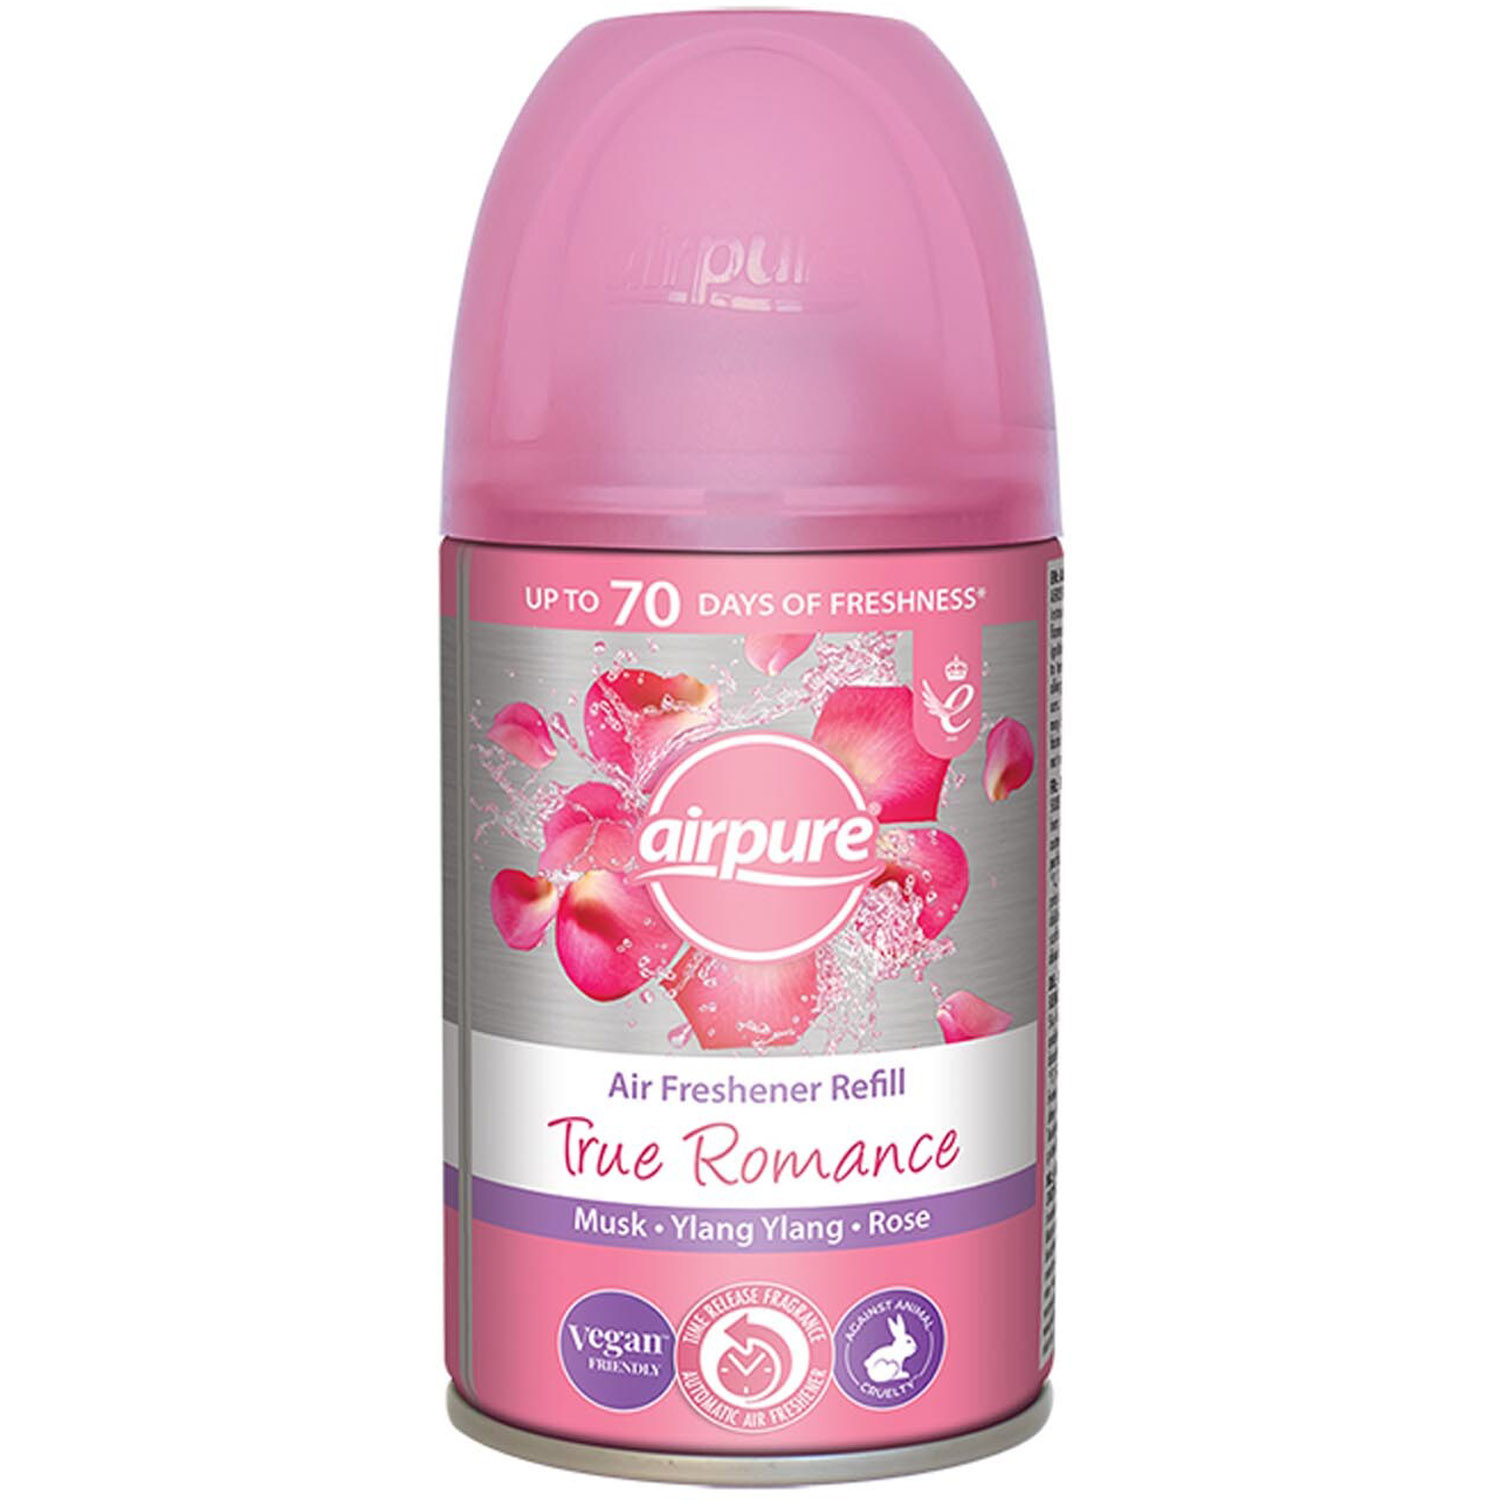 Airpure True Romance Air Freshener Refill Image